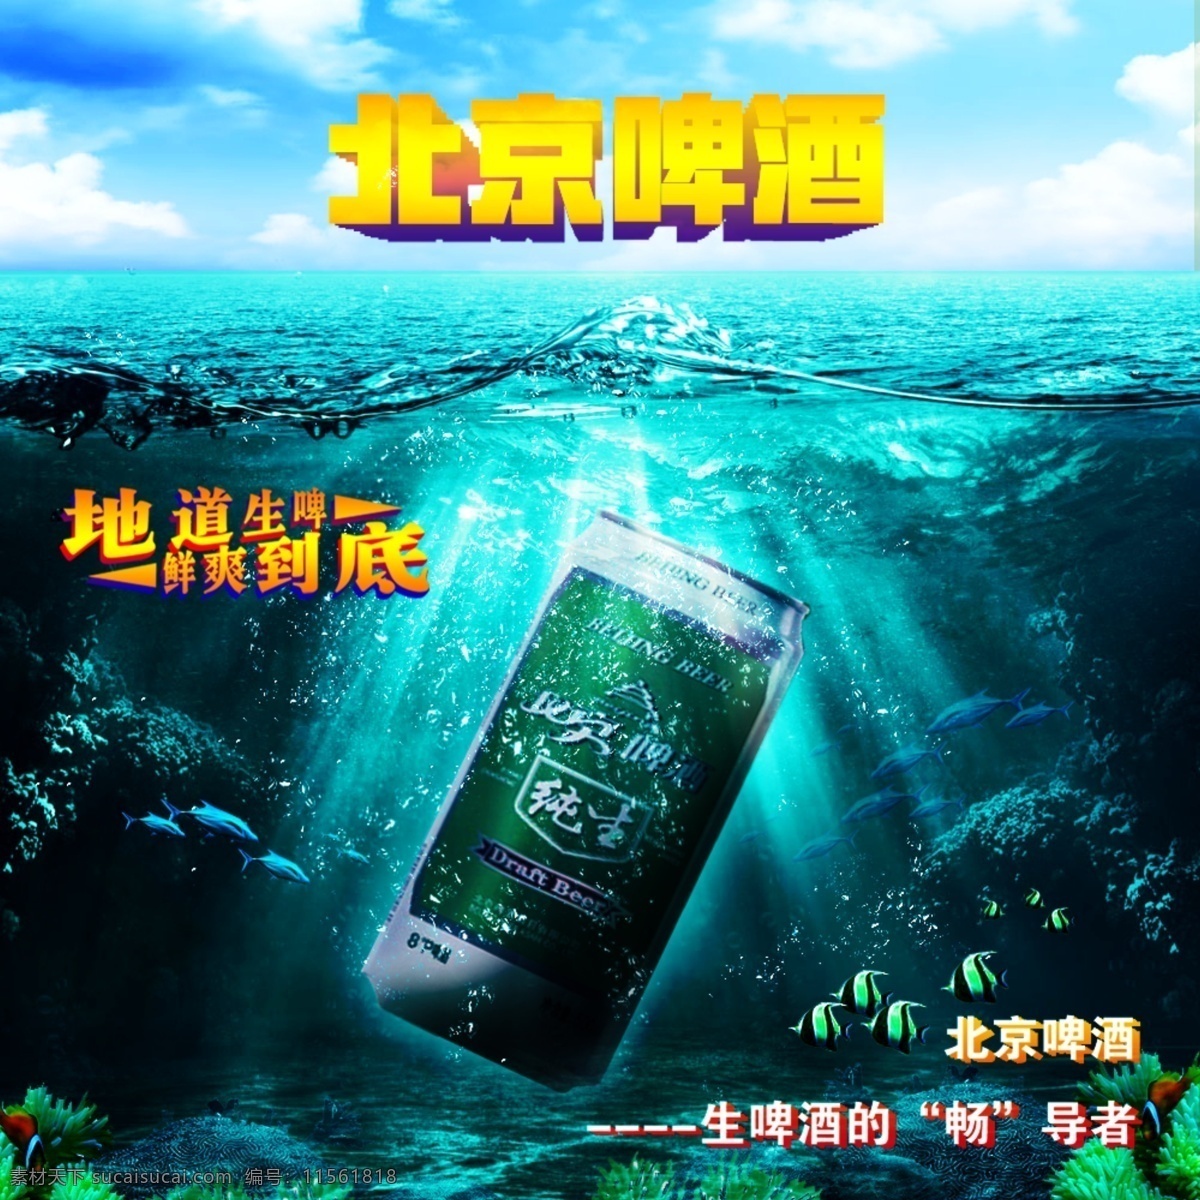 北京啤酒海报 北京 啤酒 海洋 蓝色 天空